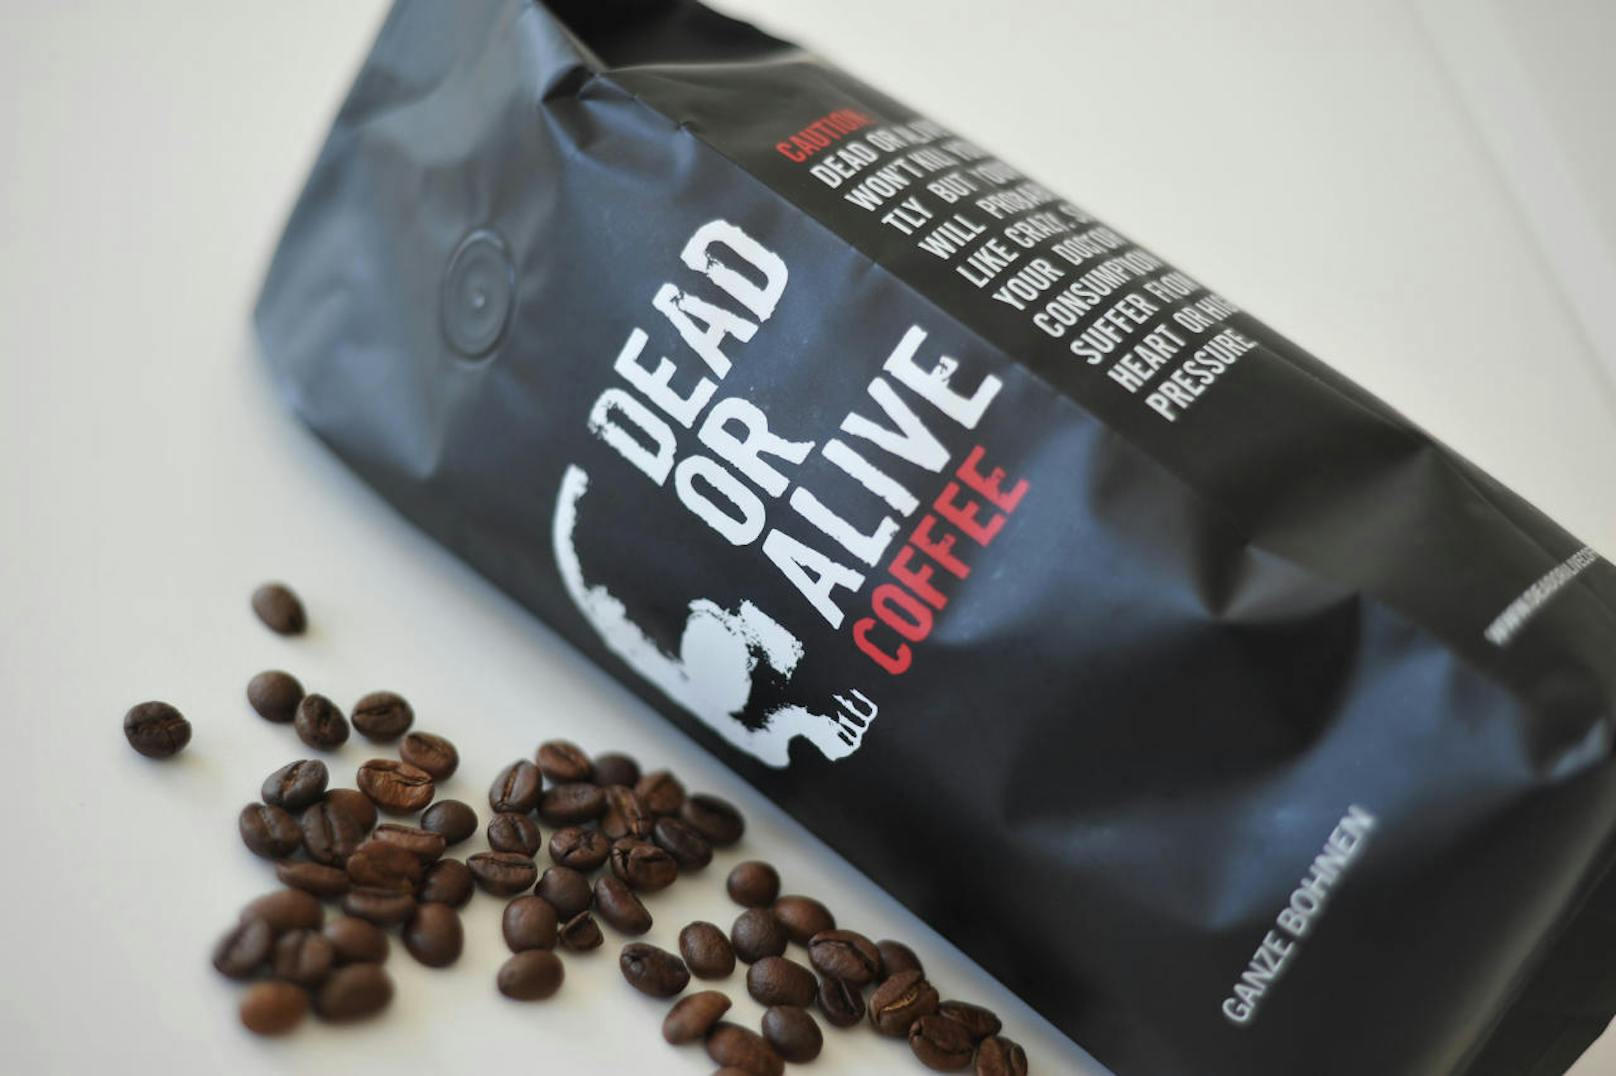 Der stärkste Kaffee Österreichs nennt sich "Dead Or Alive Coffee".